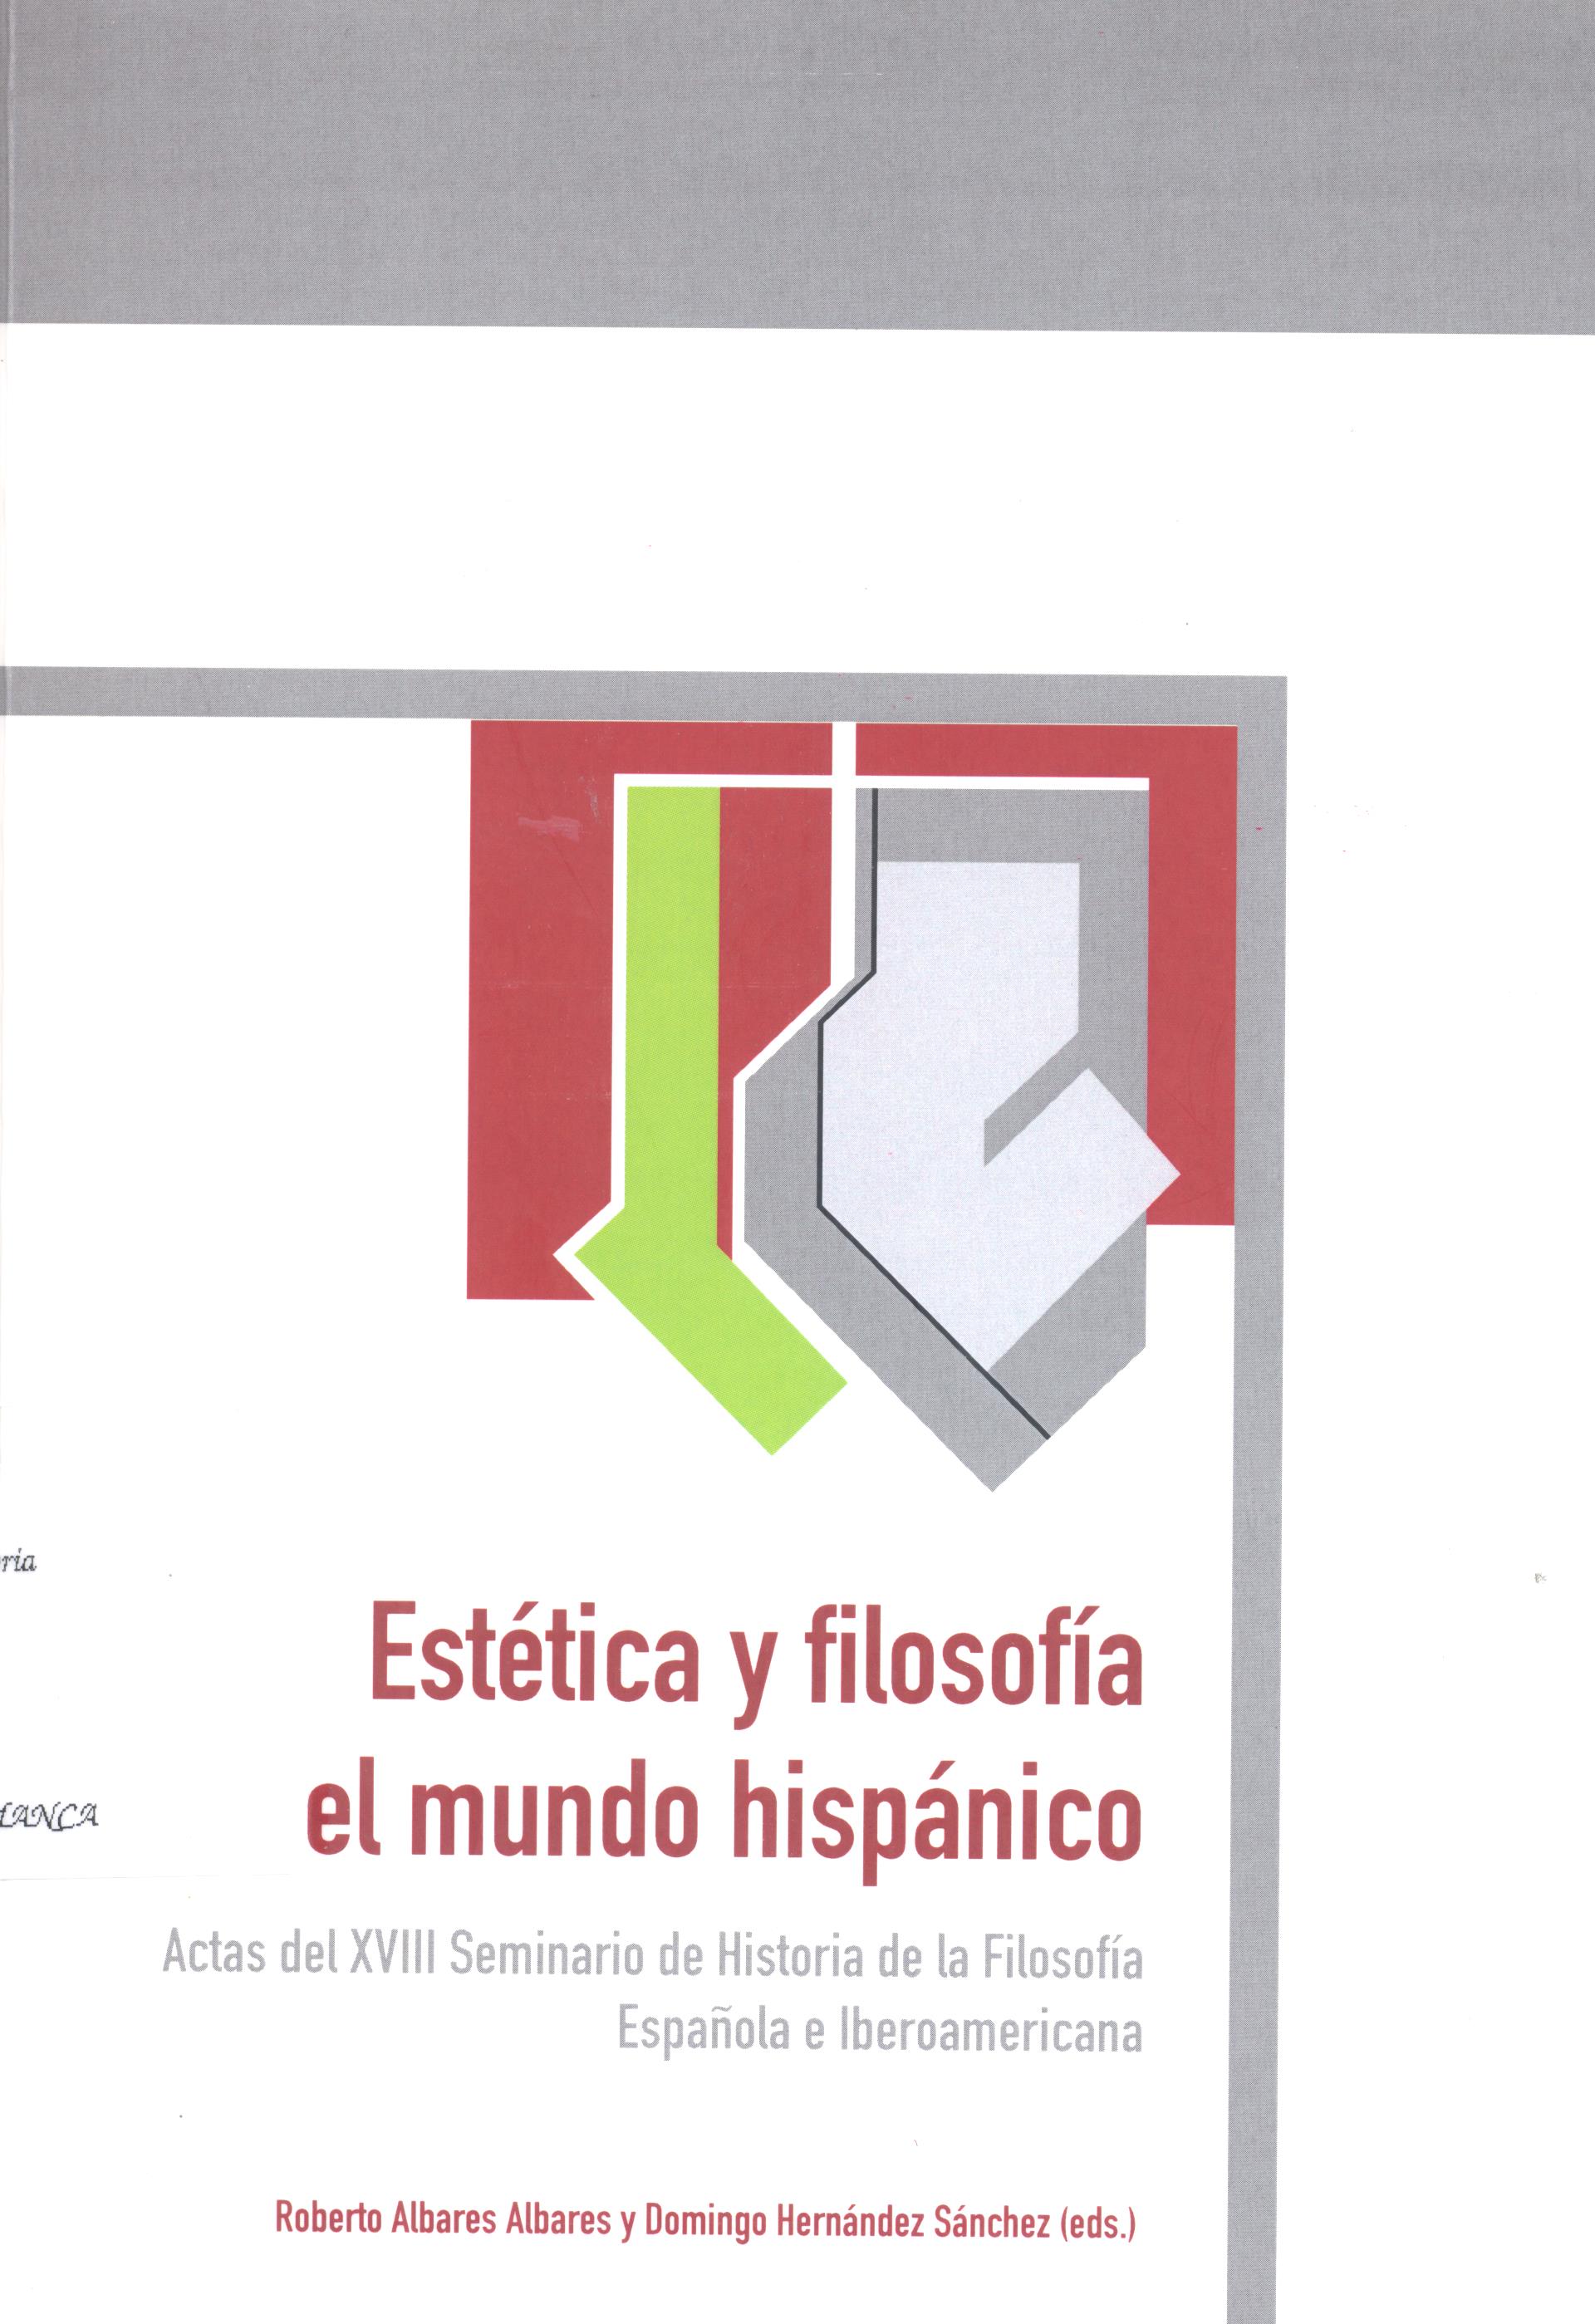 Imagen de portada del libro Estética y filosofía en el mundo hispánico